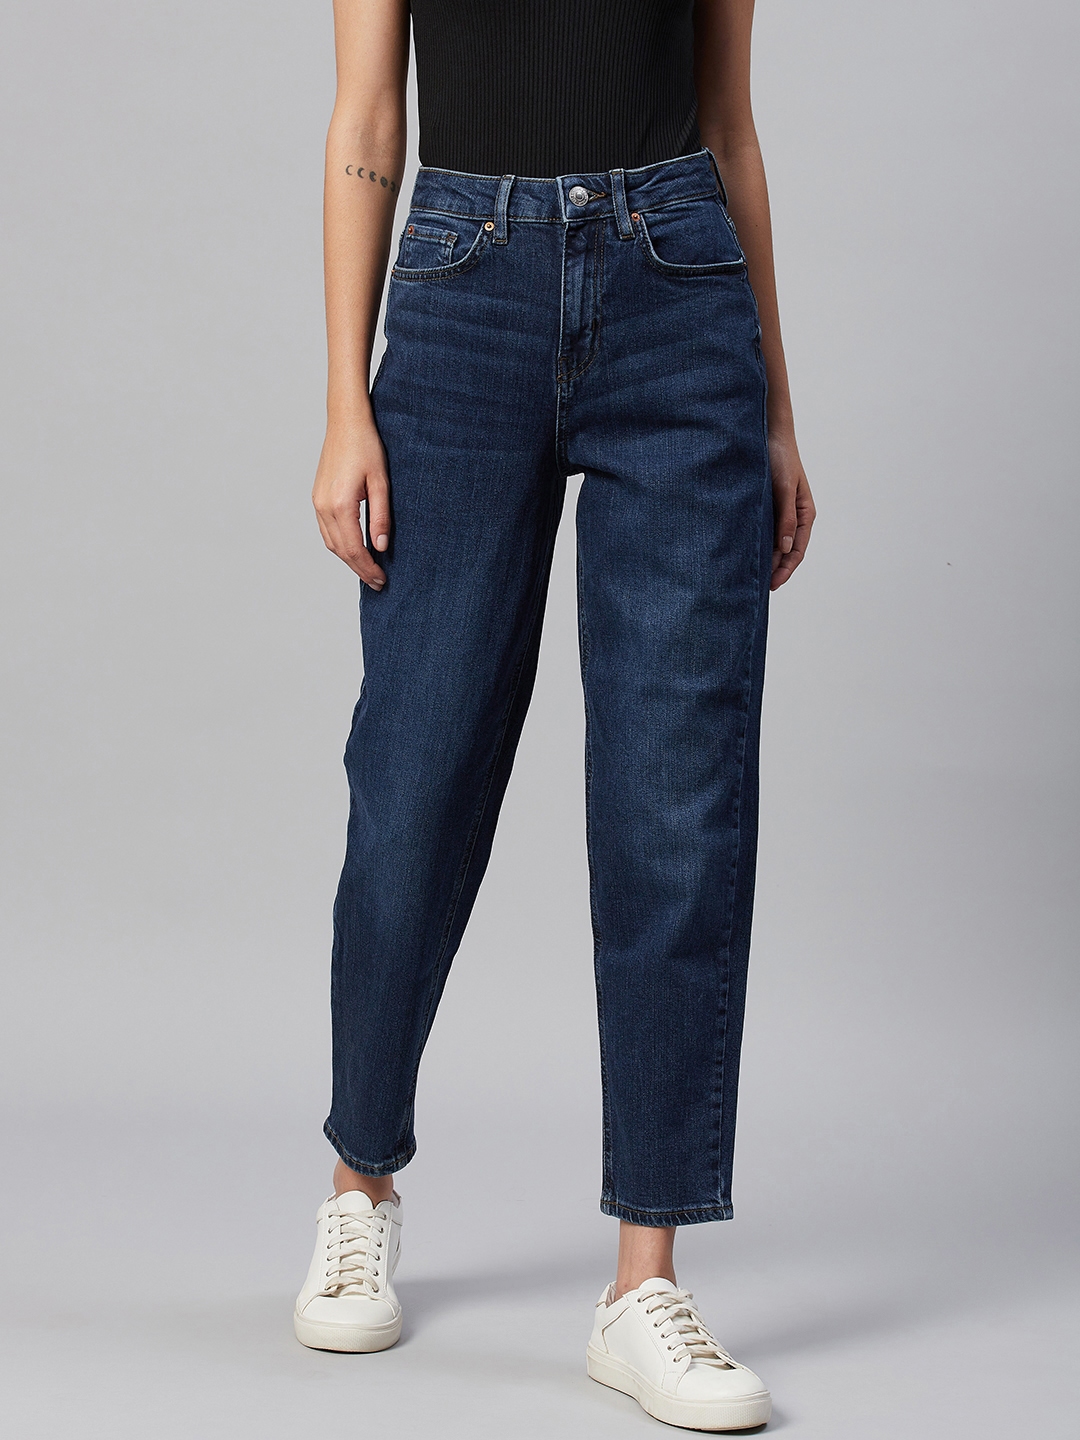 Jeans & Trousers | Tone Dark Blue Jeans(Women) | Freeup-lmd.edu.vn